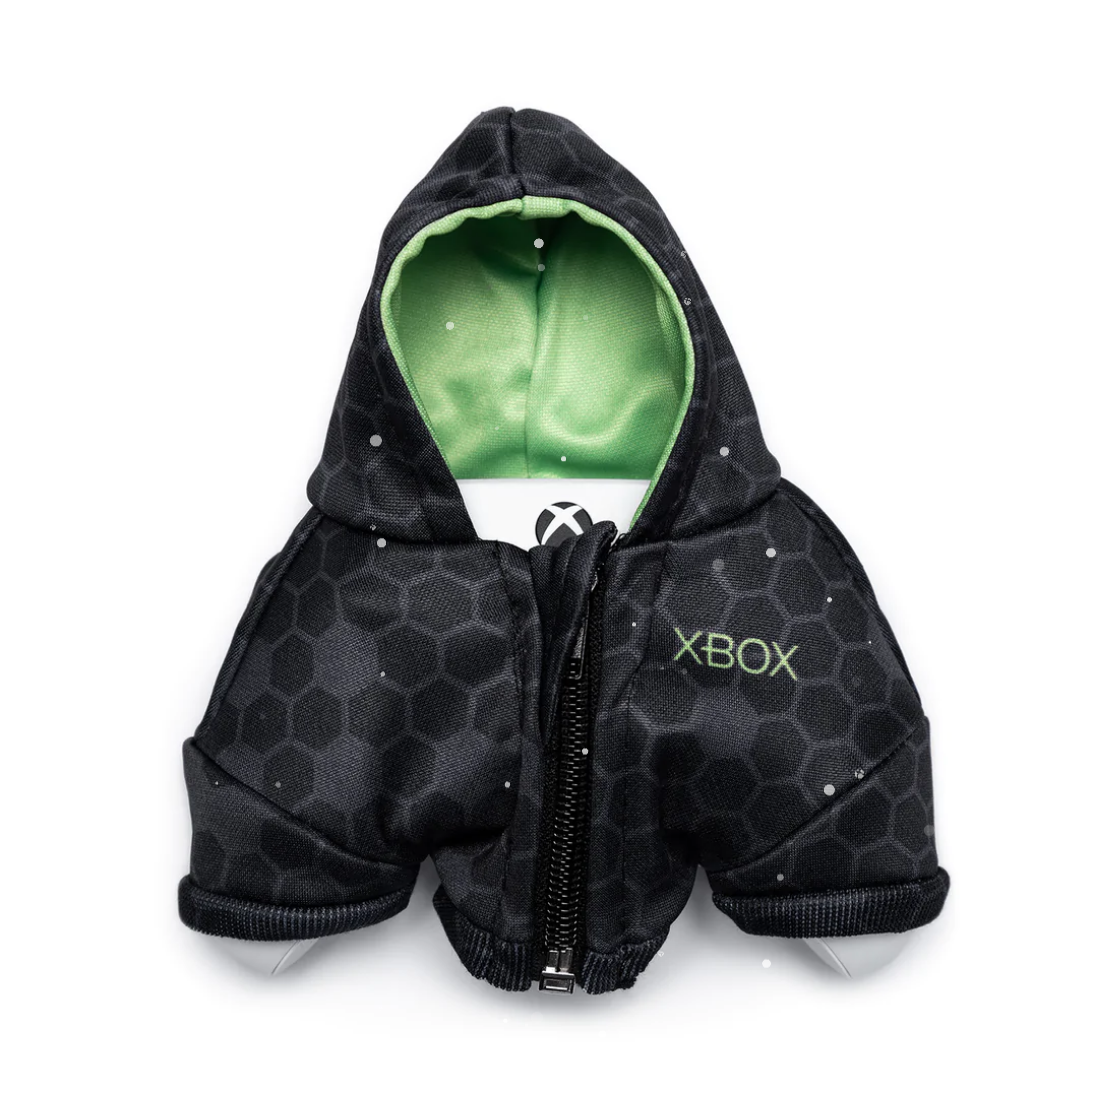 Imagem para Microsoft vende mini-casacos para o comando da Xbox por €24,95